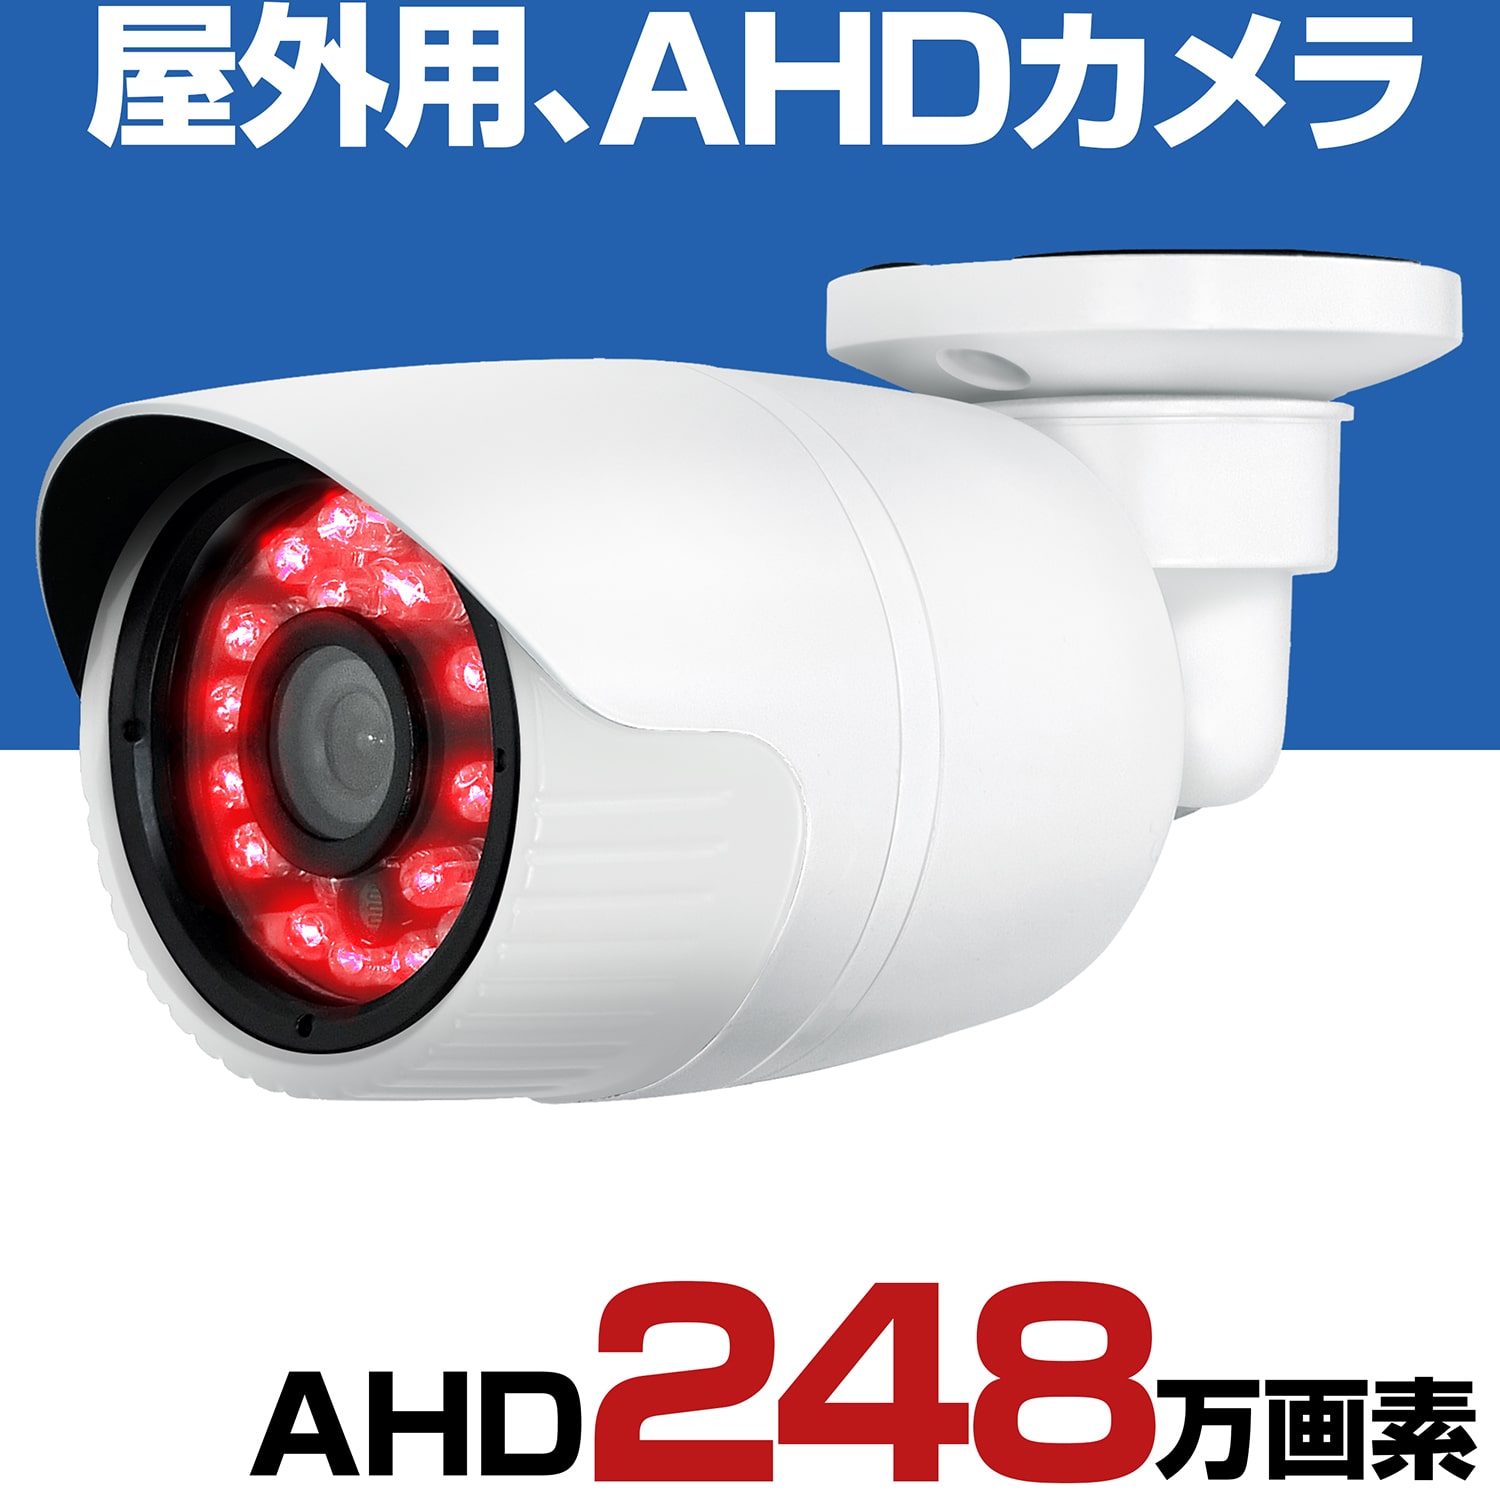 ついに入荷 防犯カメラ 屋外 家庭用 有線 AHD 248万画素 小型 防水